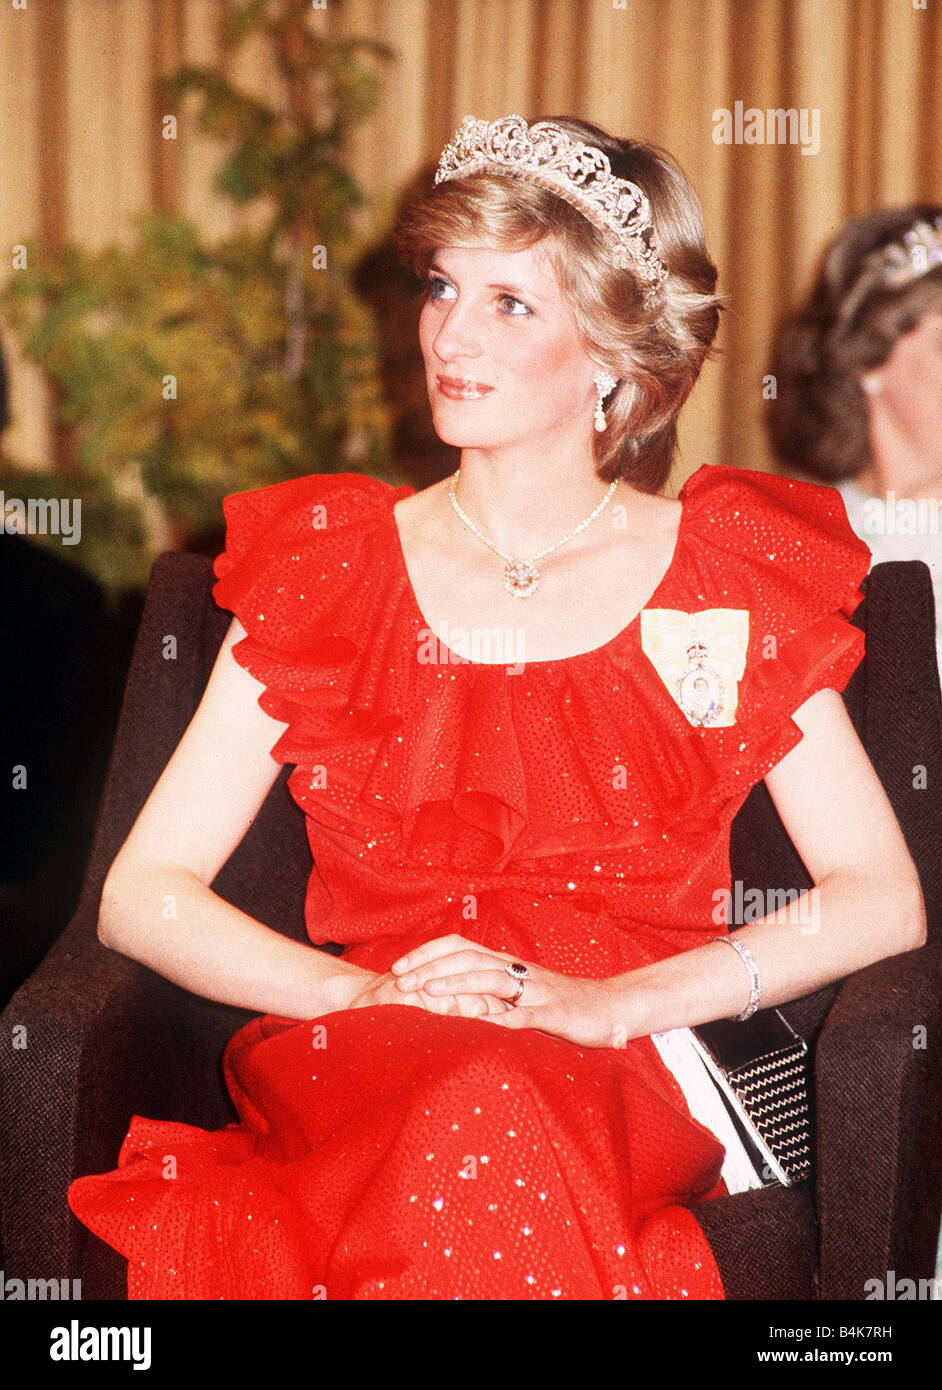 La princesse Diana en Australie Tasmanie à l'état de réception Hôtel Wrest  Point portant une robe rouge et tiara Mars 1983 Photo Stock - Alamy